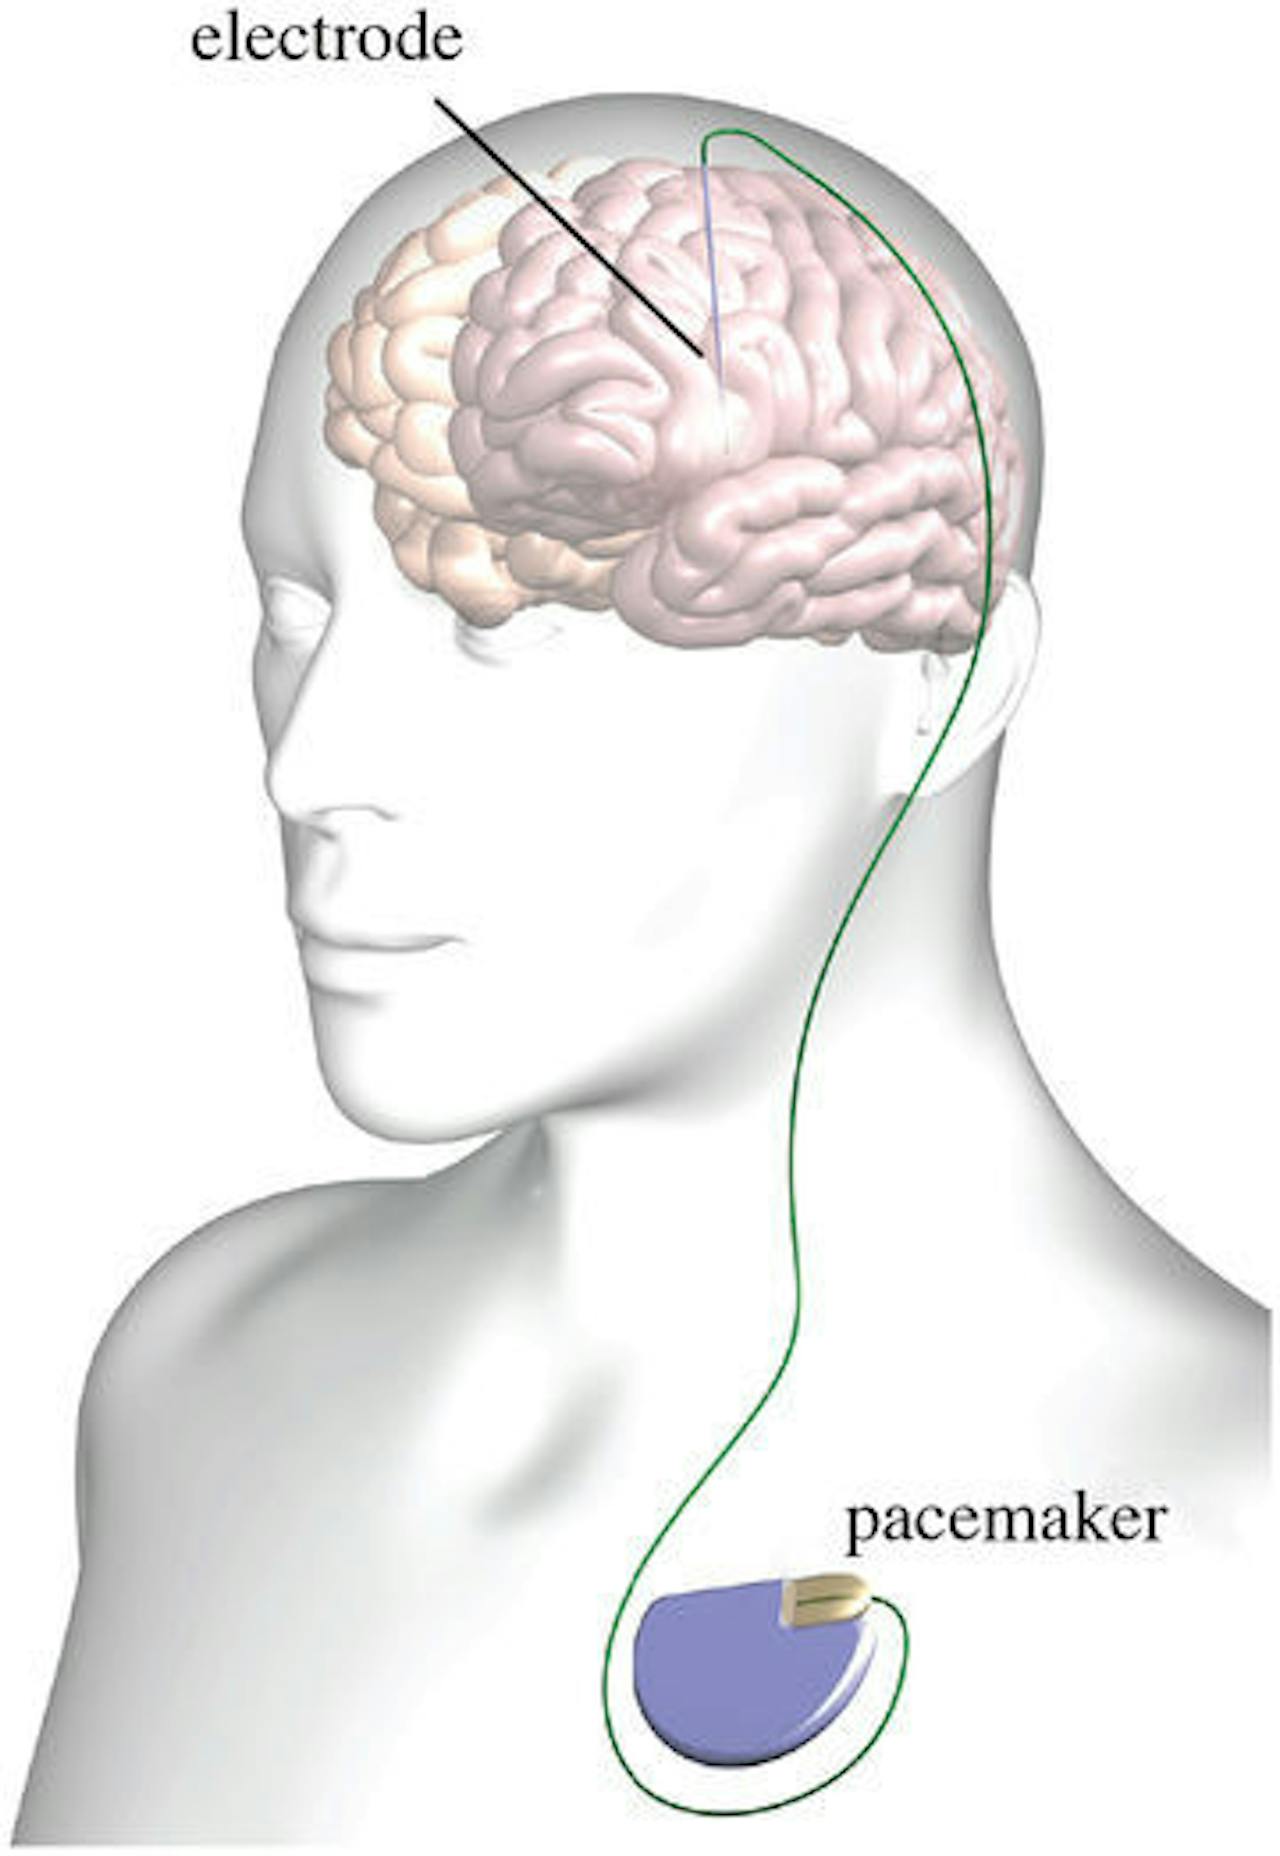 Een diagram van een brein met daarop electrode en een pacemaker afgebeeld.